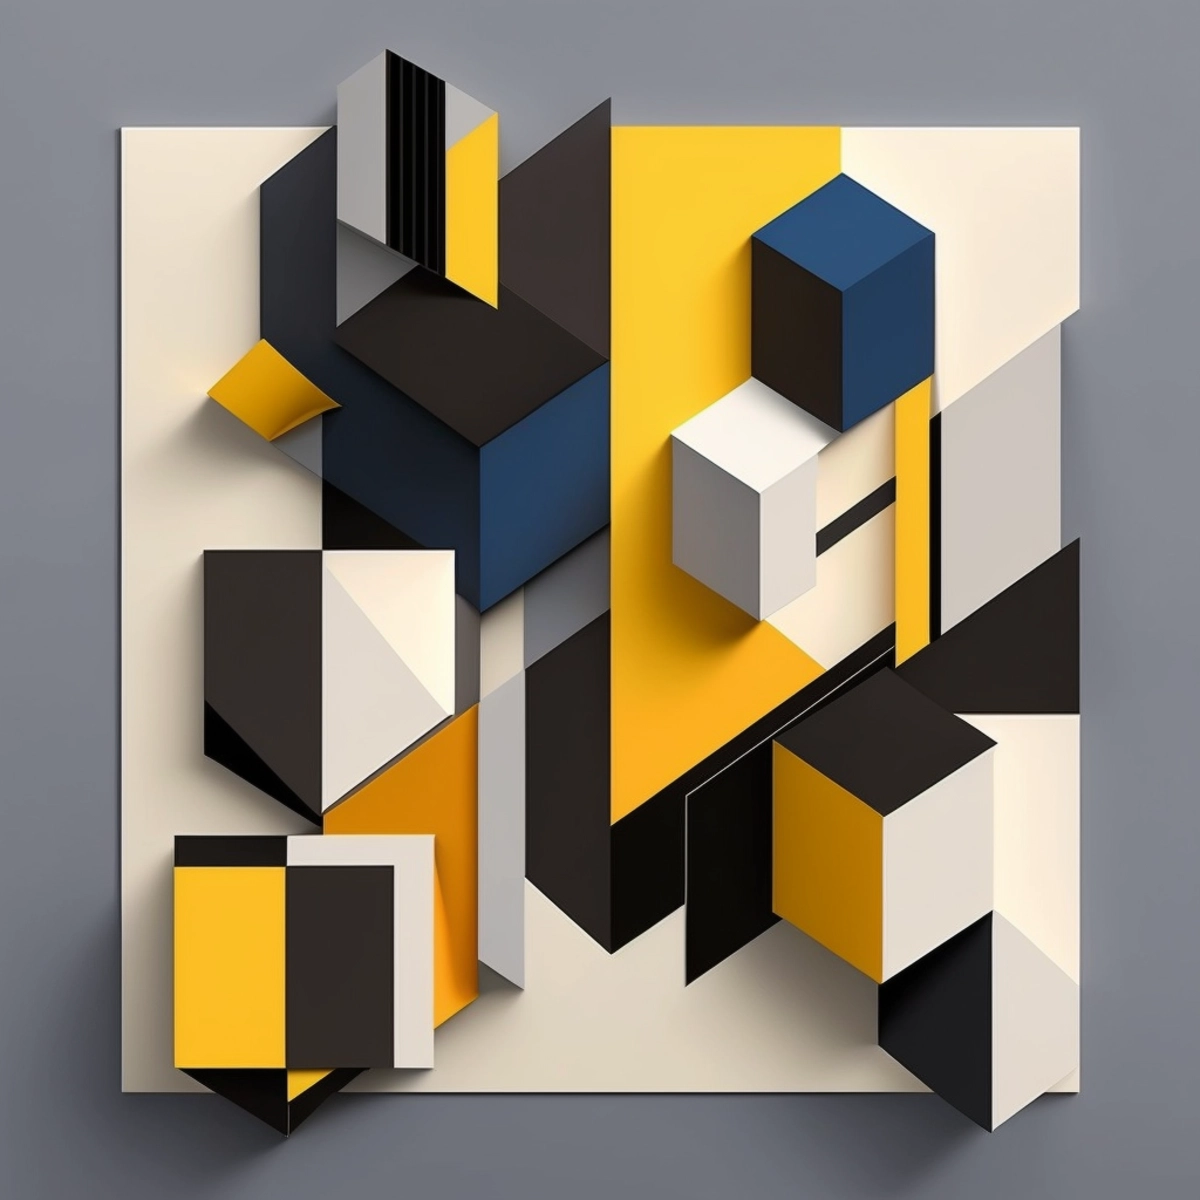 Uma composição geométrica e minimalista com linhas cruzadas e formas simples, em uma paleta de cores ousadas e de alto contraste